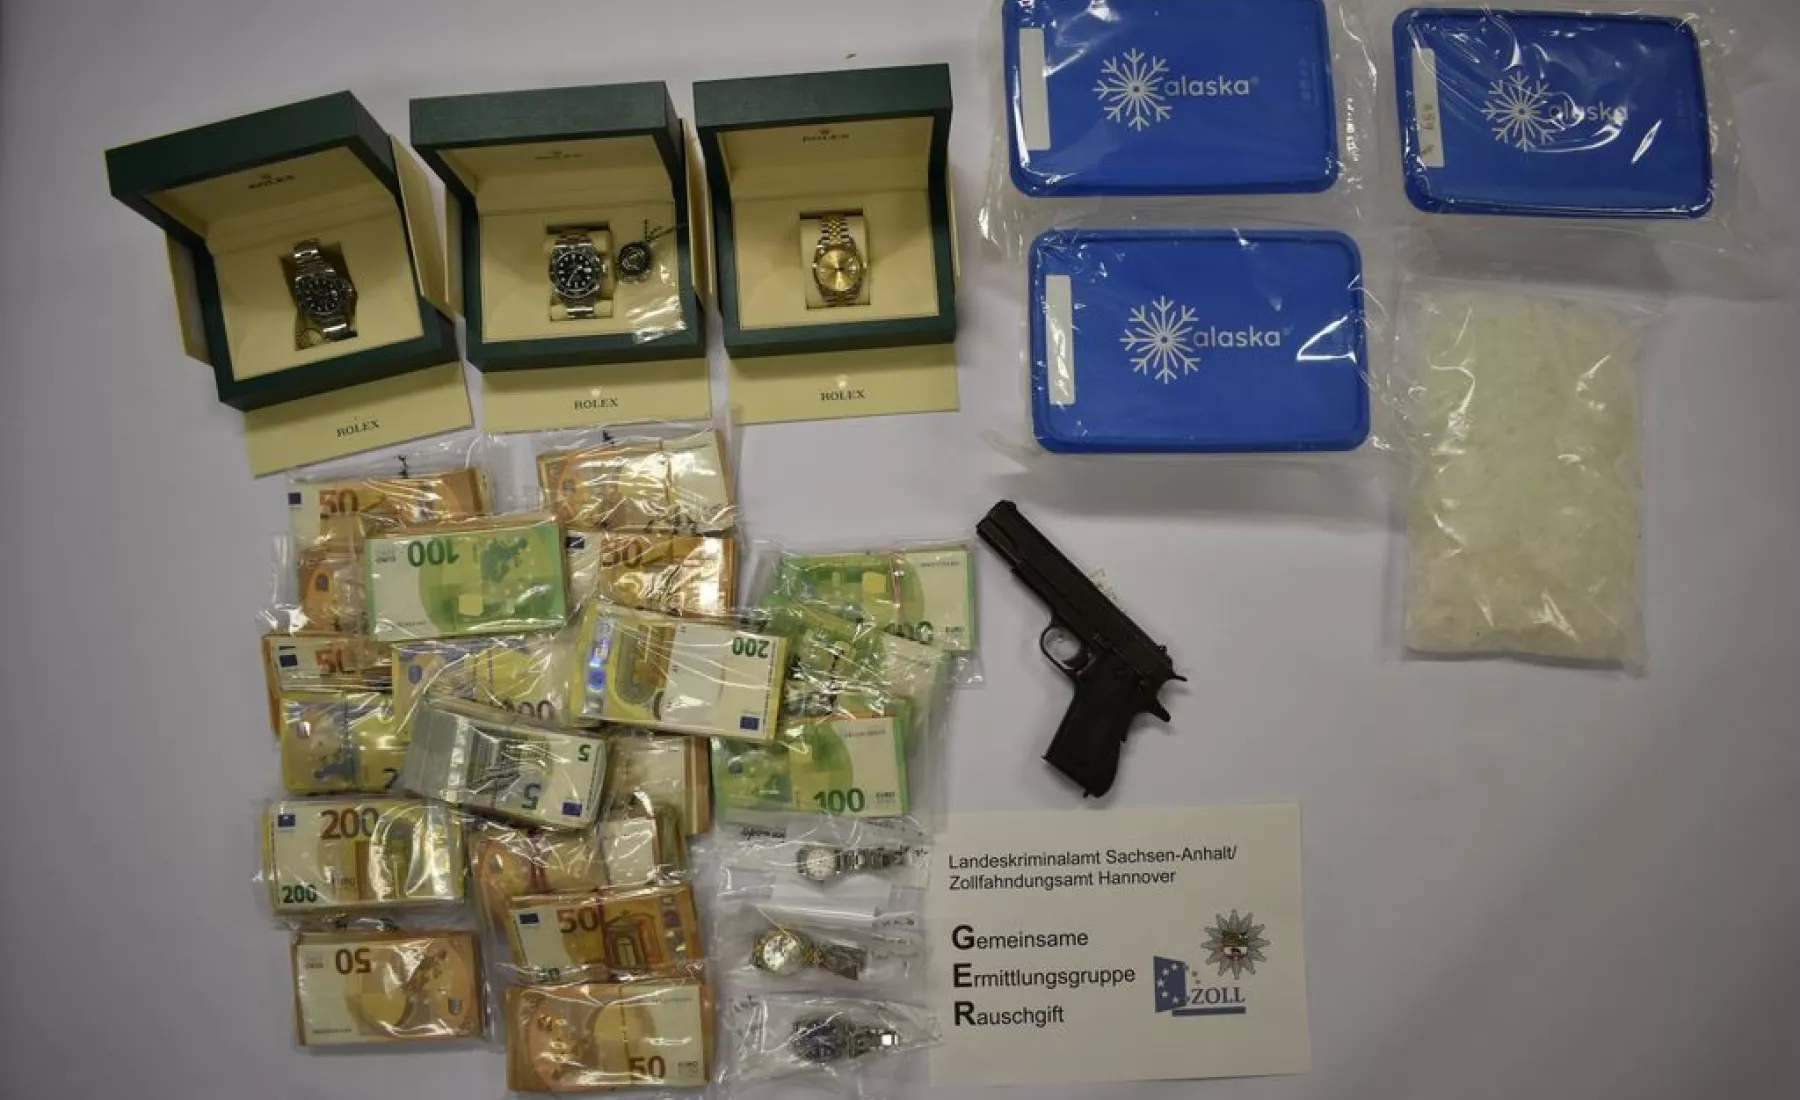 Sichergestelltes Methamphetamin (Crystal), Rolex-Uhren, Bargeld, Schusswaffe